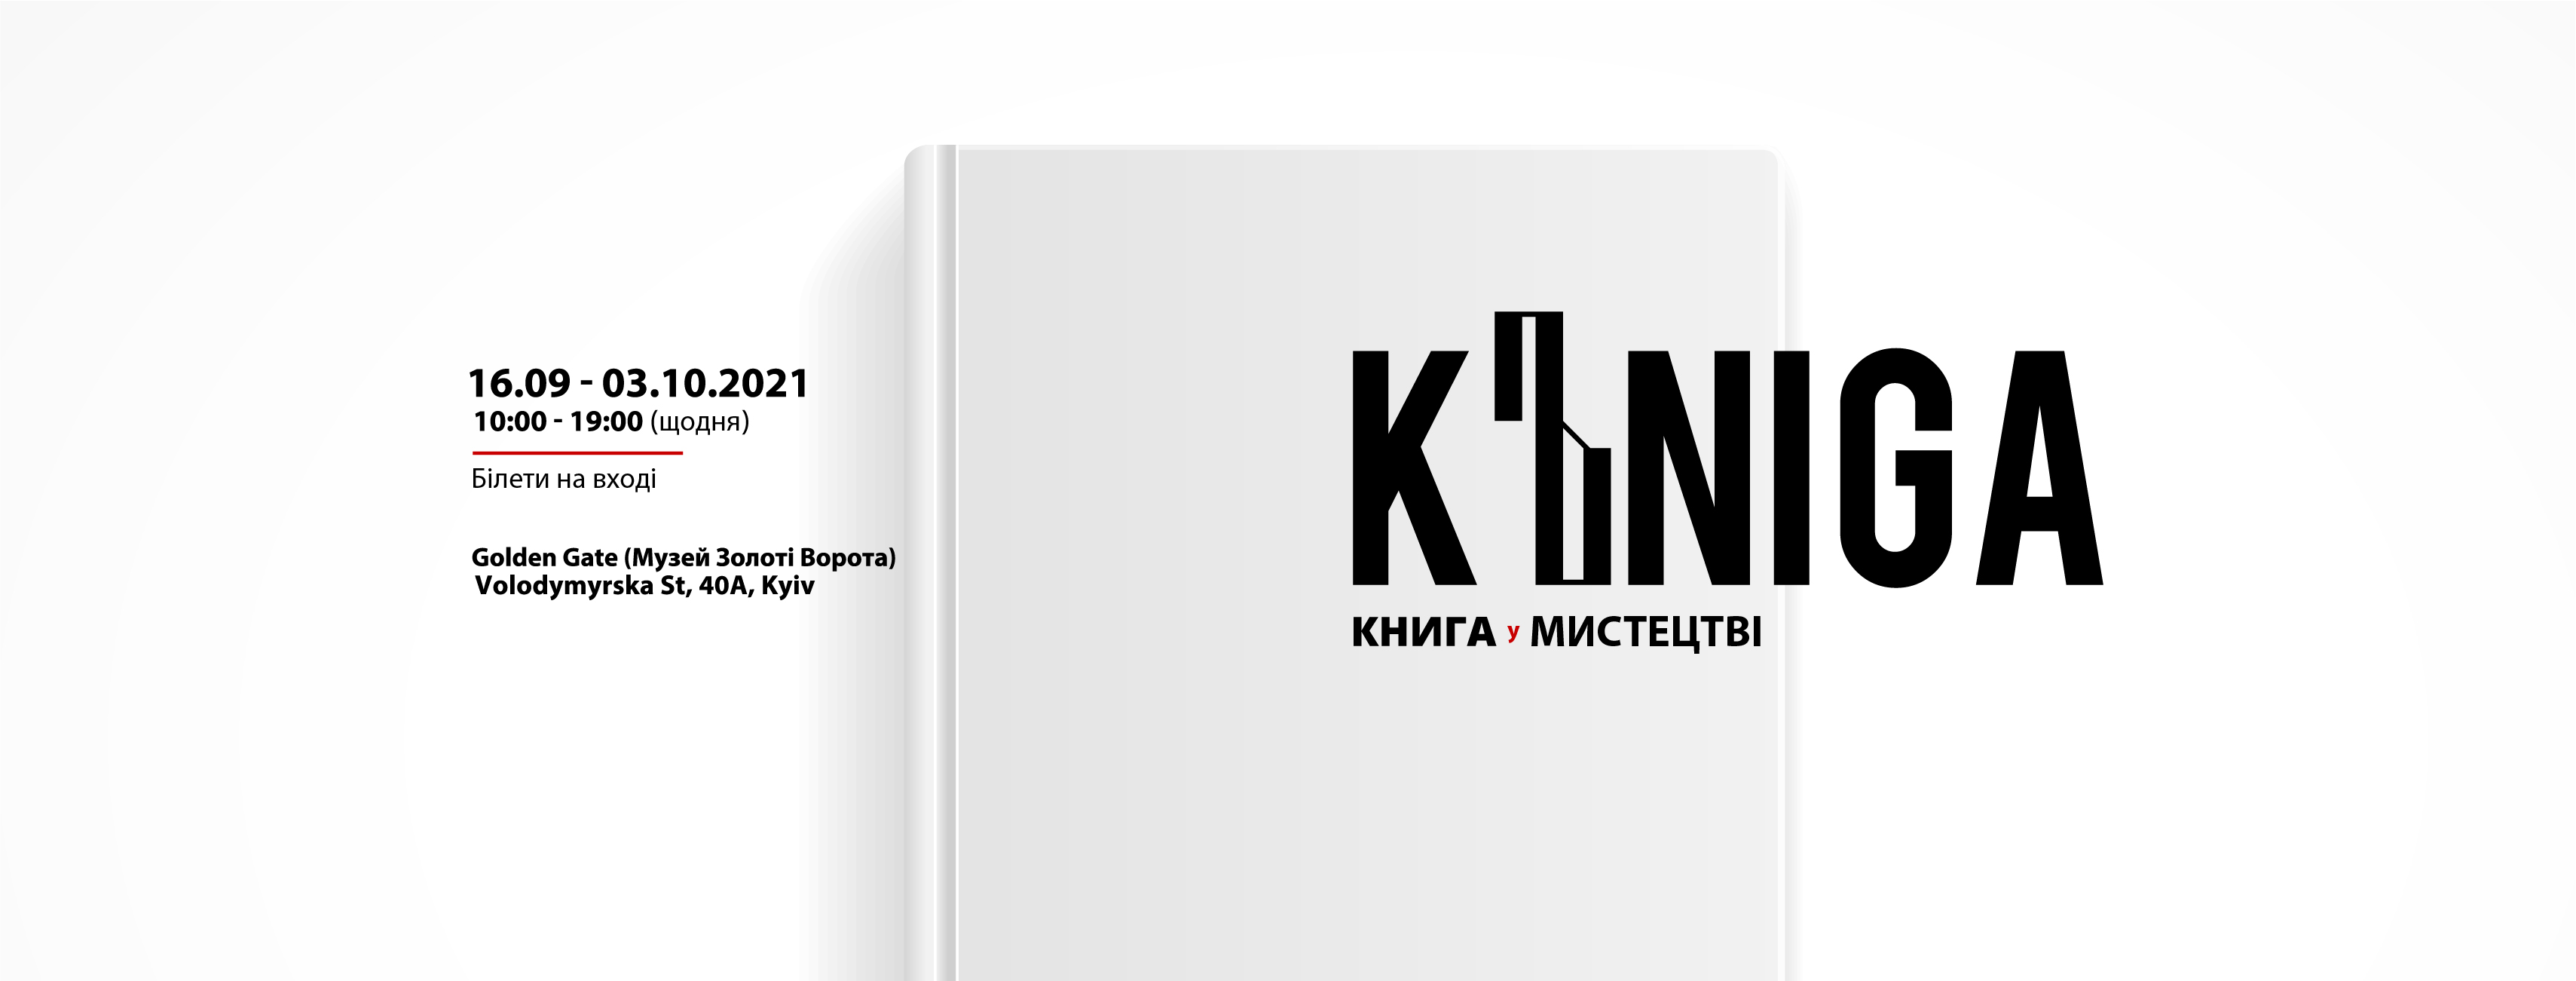 ”Kъniga” как арт-объект: в Киеве покажут работы украинских художников о любви к чтению и книге — фото 1